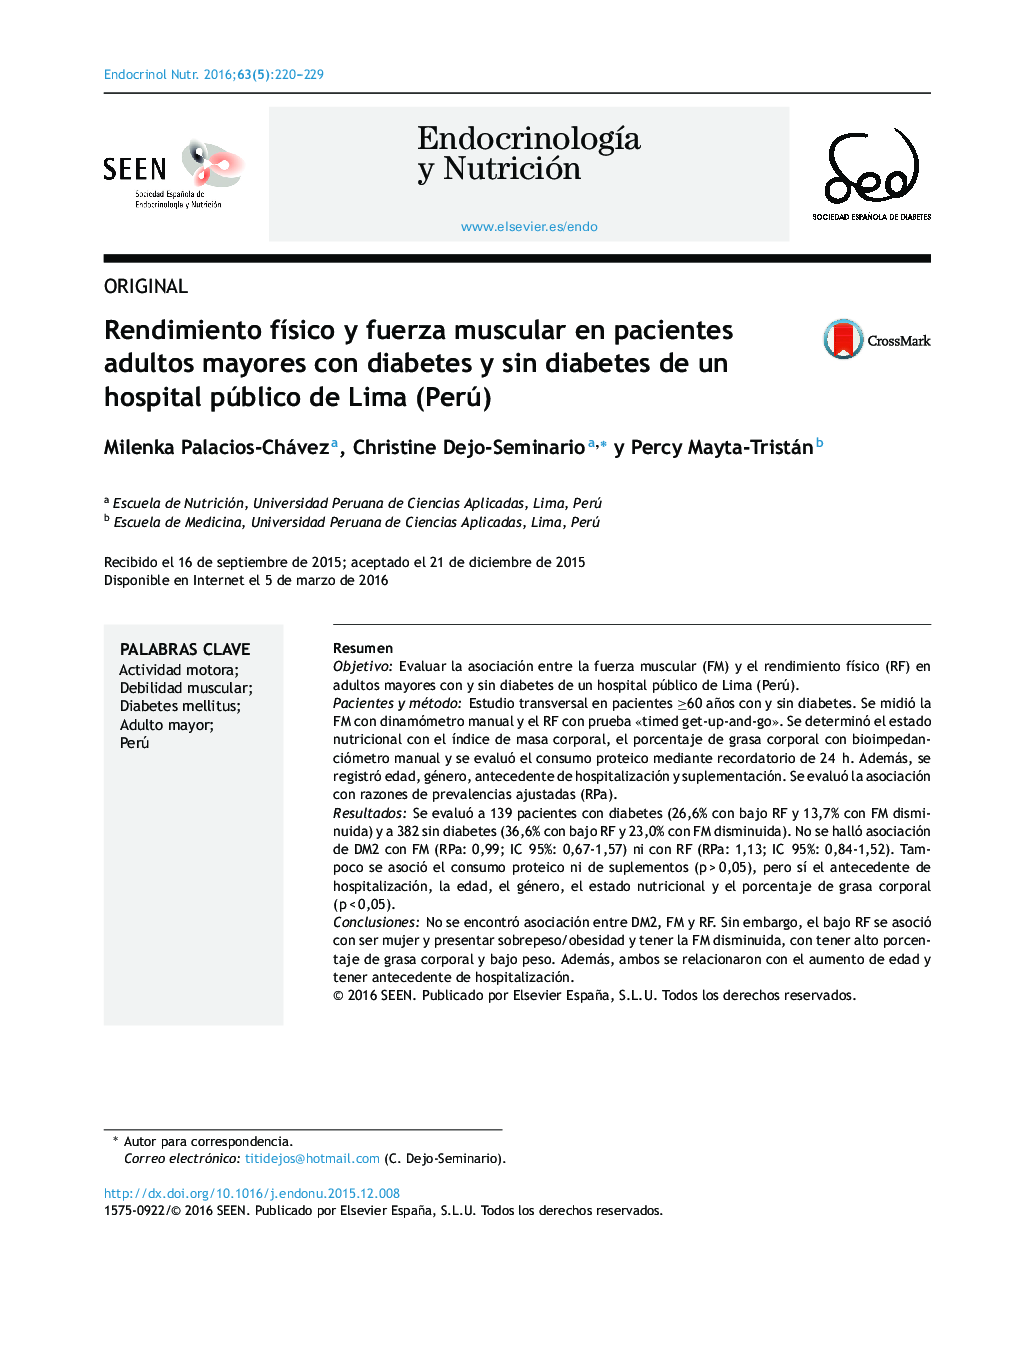 Rendimiento físico y fuerza muscular en pacientes adultos mayores con diabetes y sin diabetes de un hospital público de Lima (Perú)